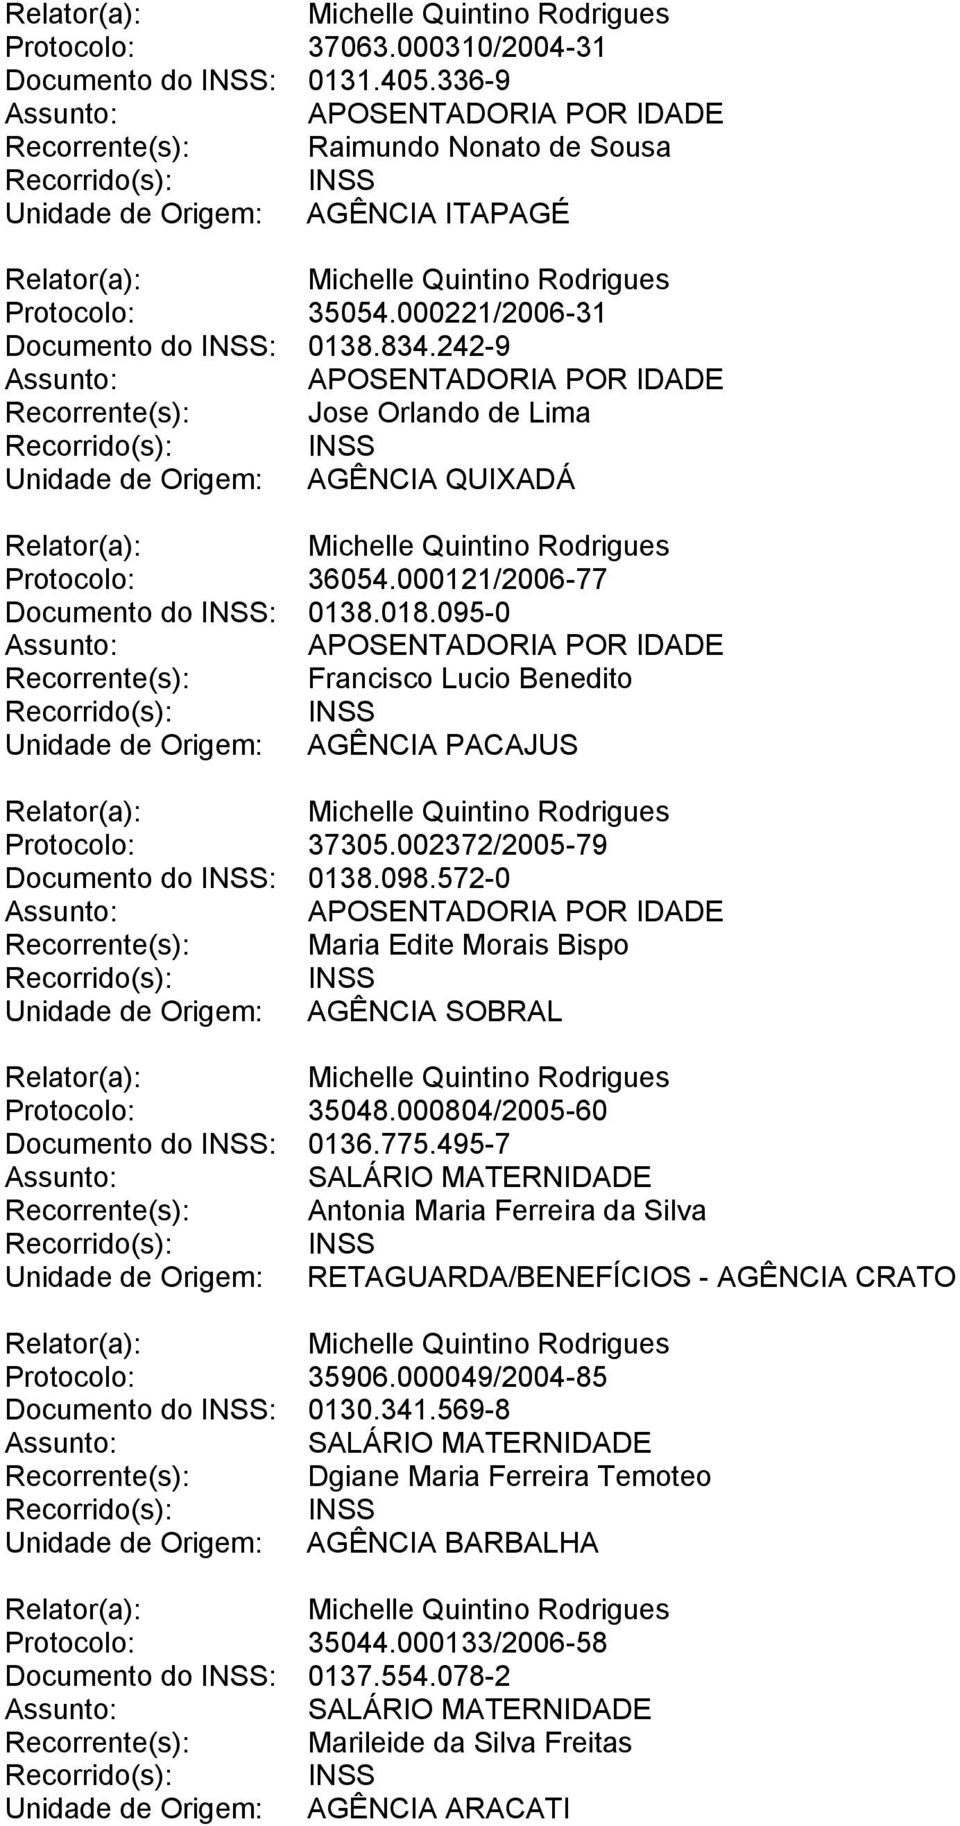 095-0 Recorrente(s): Francisco Lucio Benedito Unidade de Origem: AGÊNCIA PACAJUS Protocolo: 37305.002372/2005-79 Documento do INSS: 0138.098.